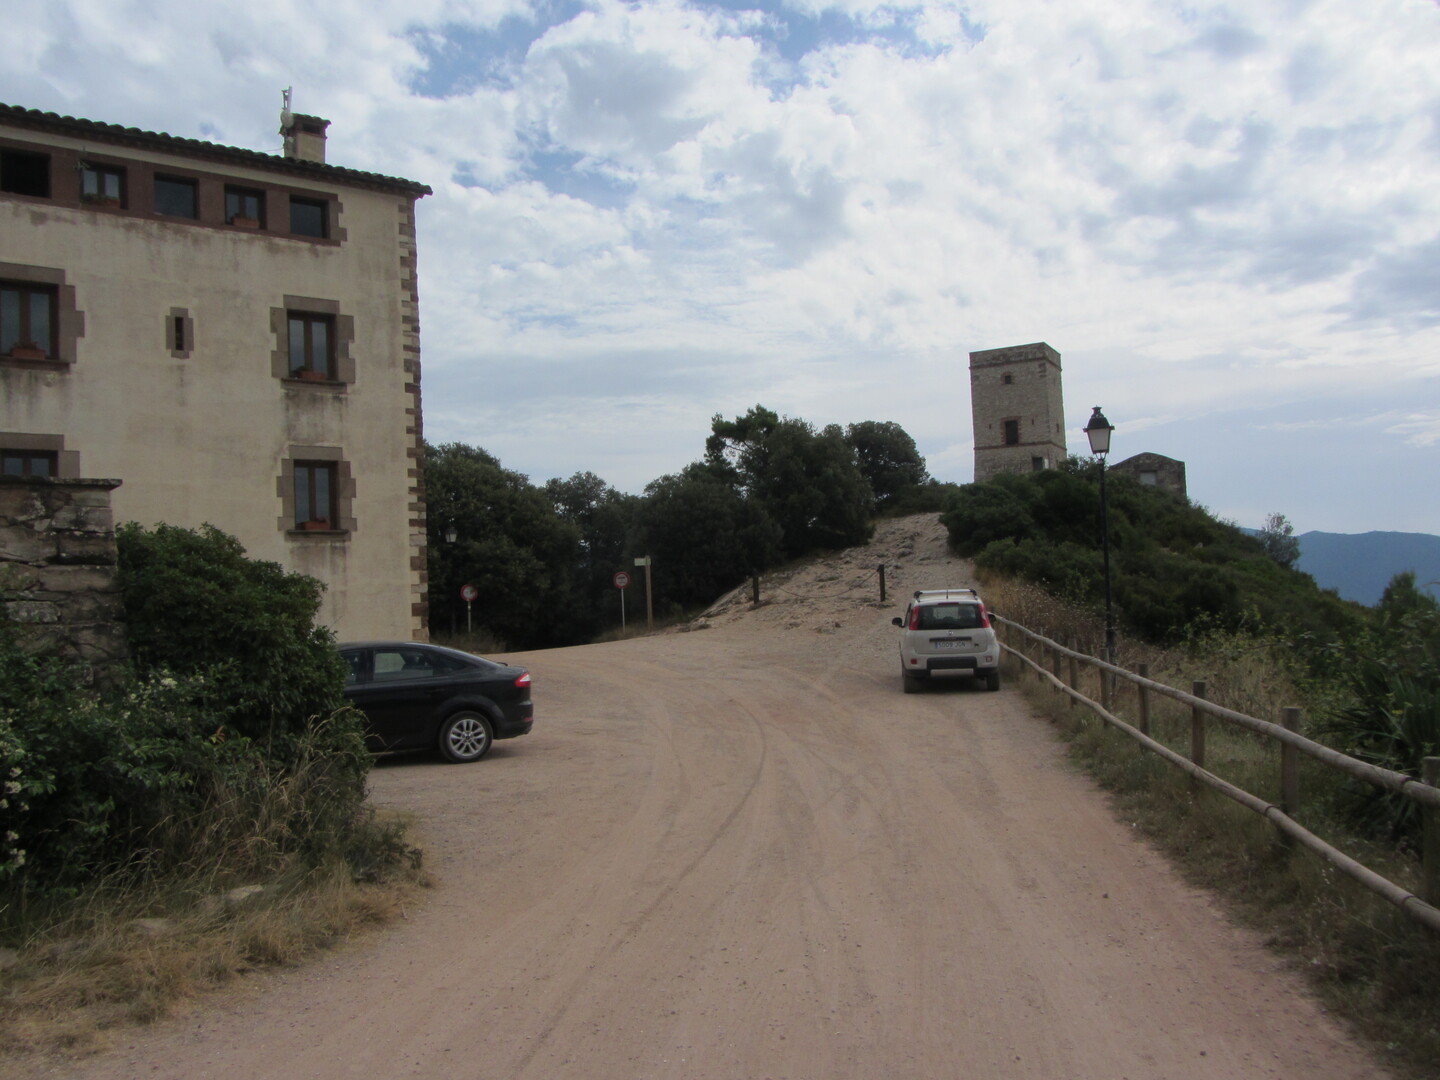 Am Santuari gibt es auch einen alten Turm.